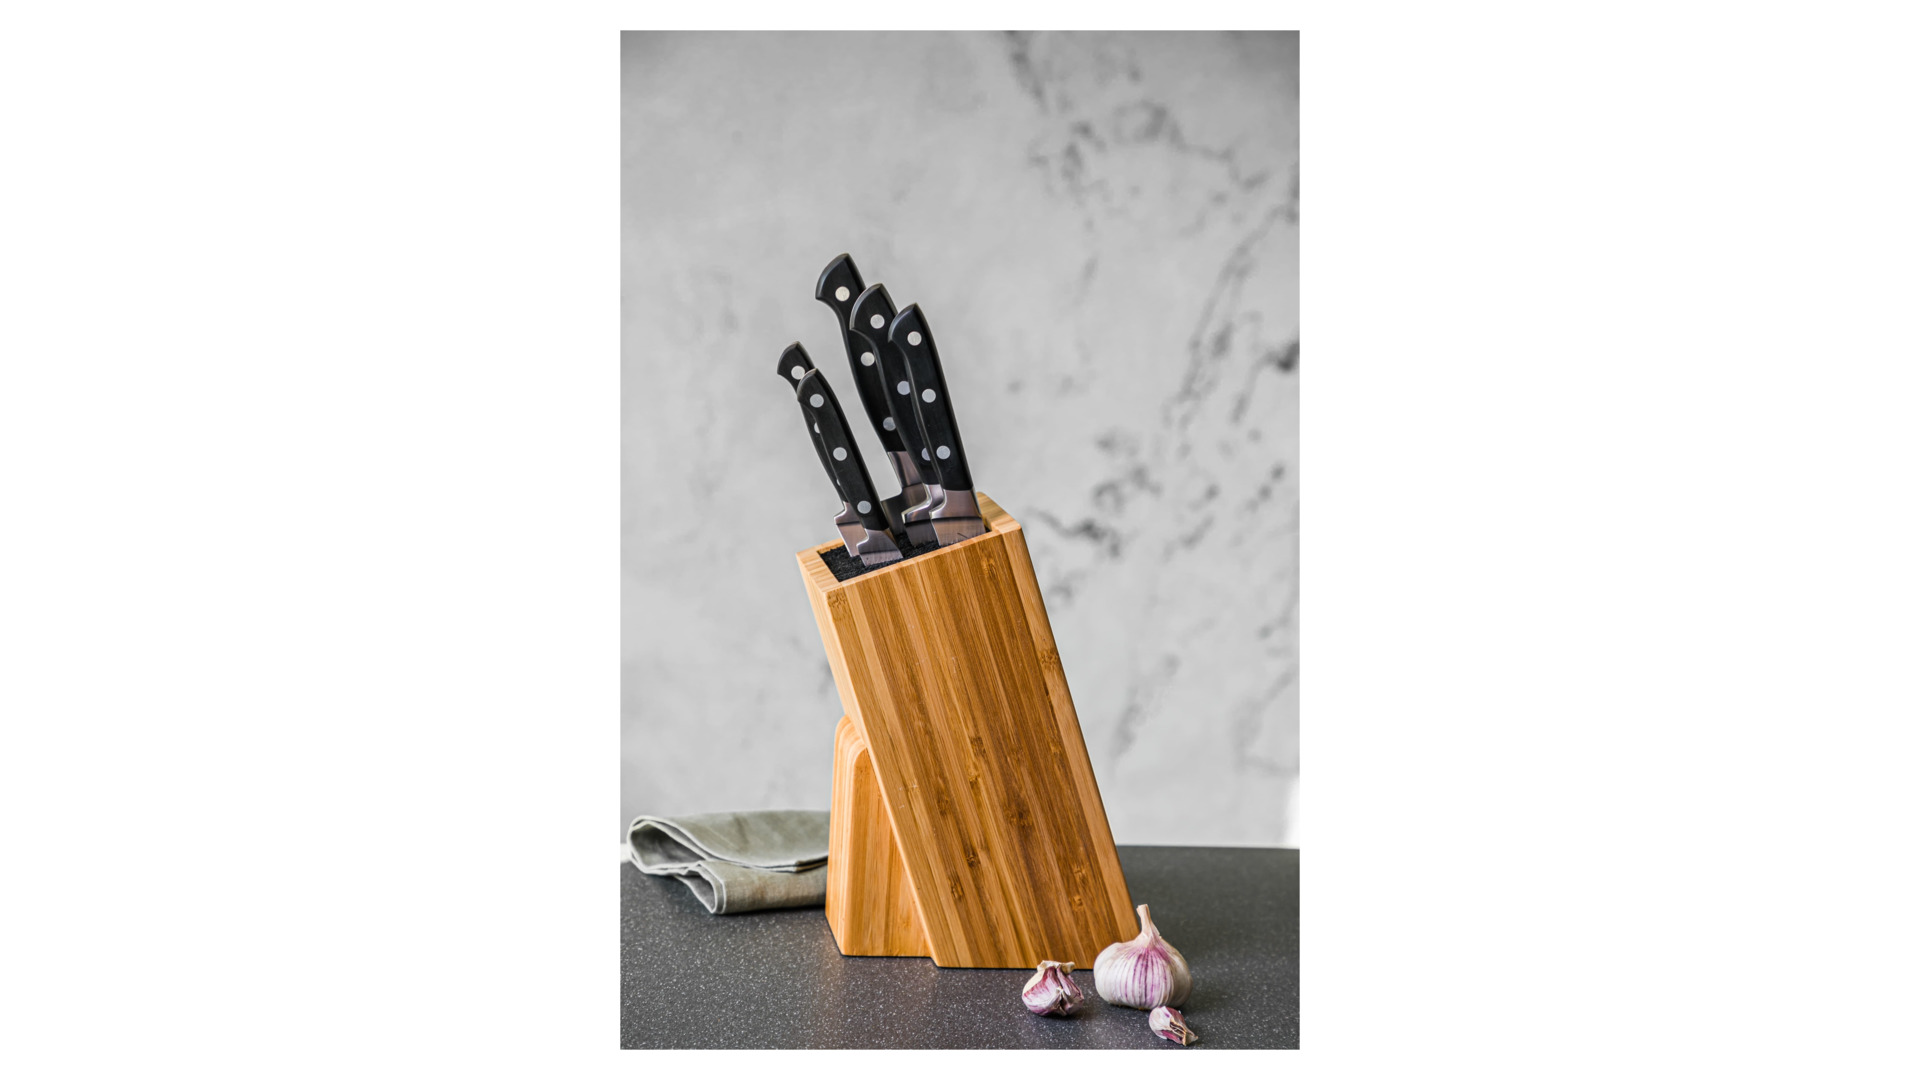 Набор из 5 ножей Tarrerias-Bonjean Georges в деревянном блоке, черная ручка